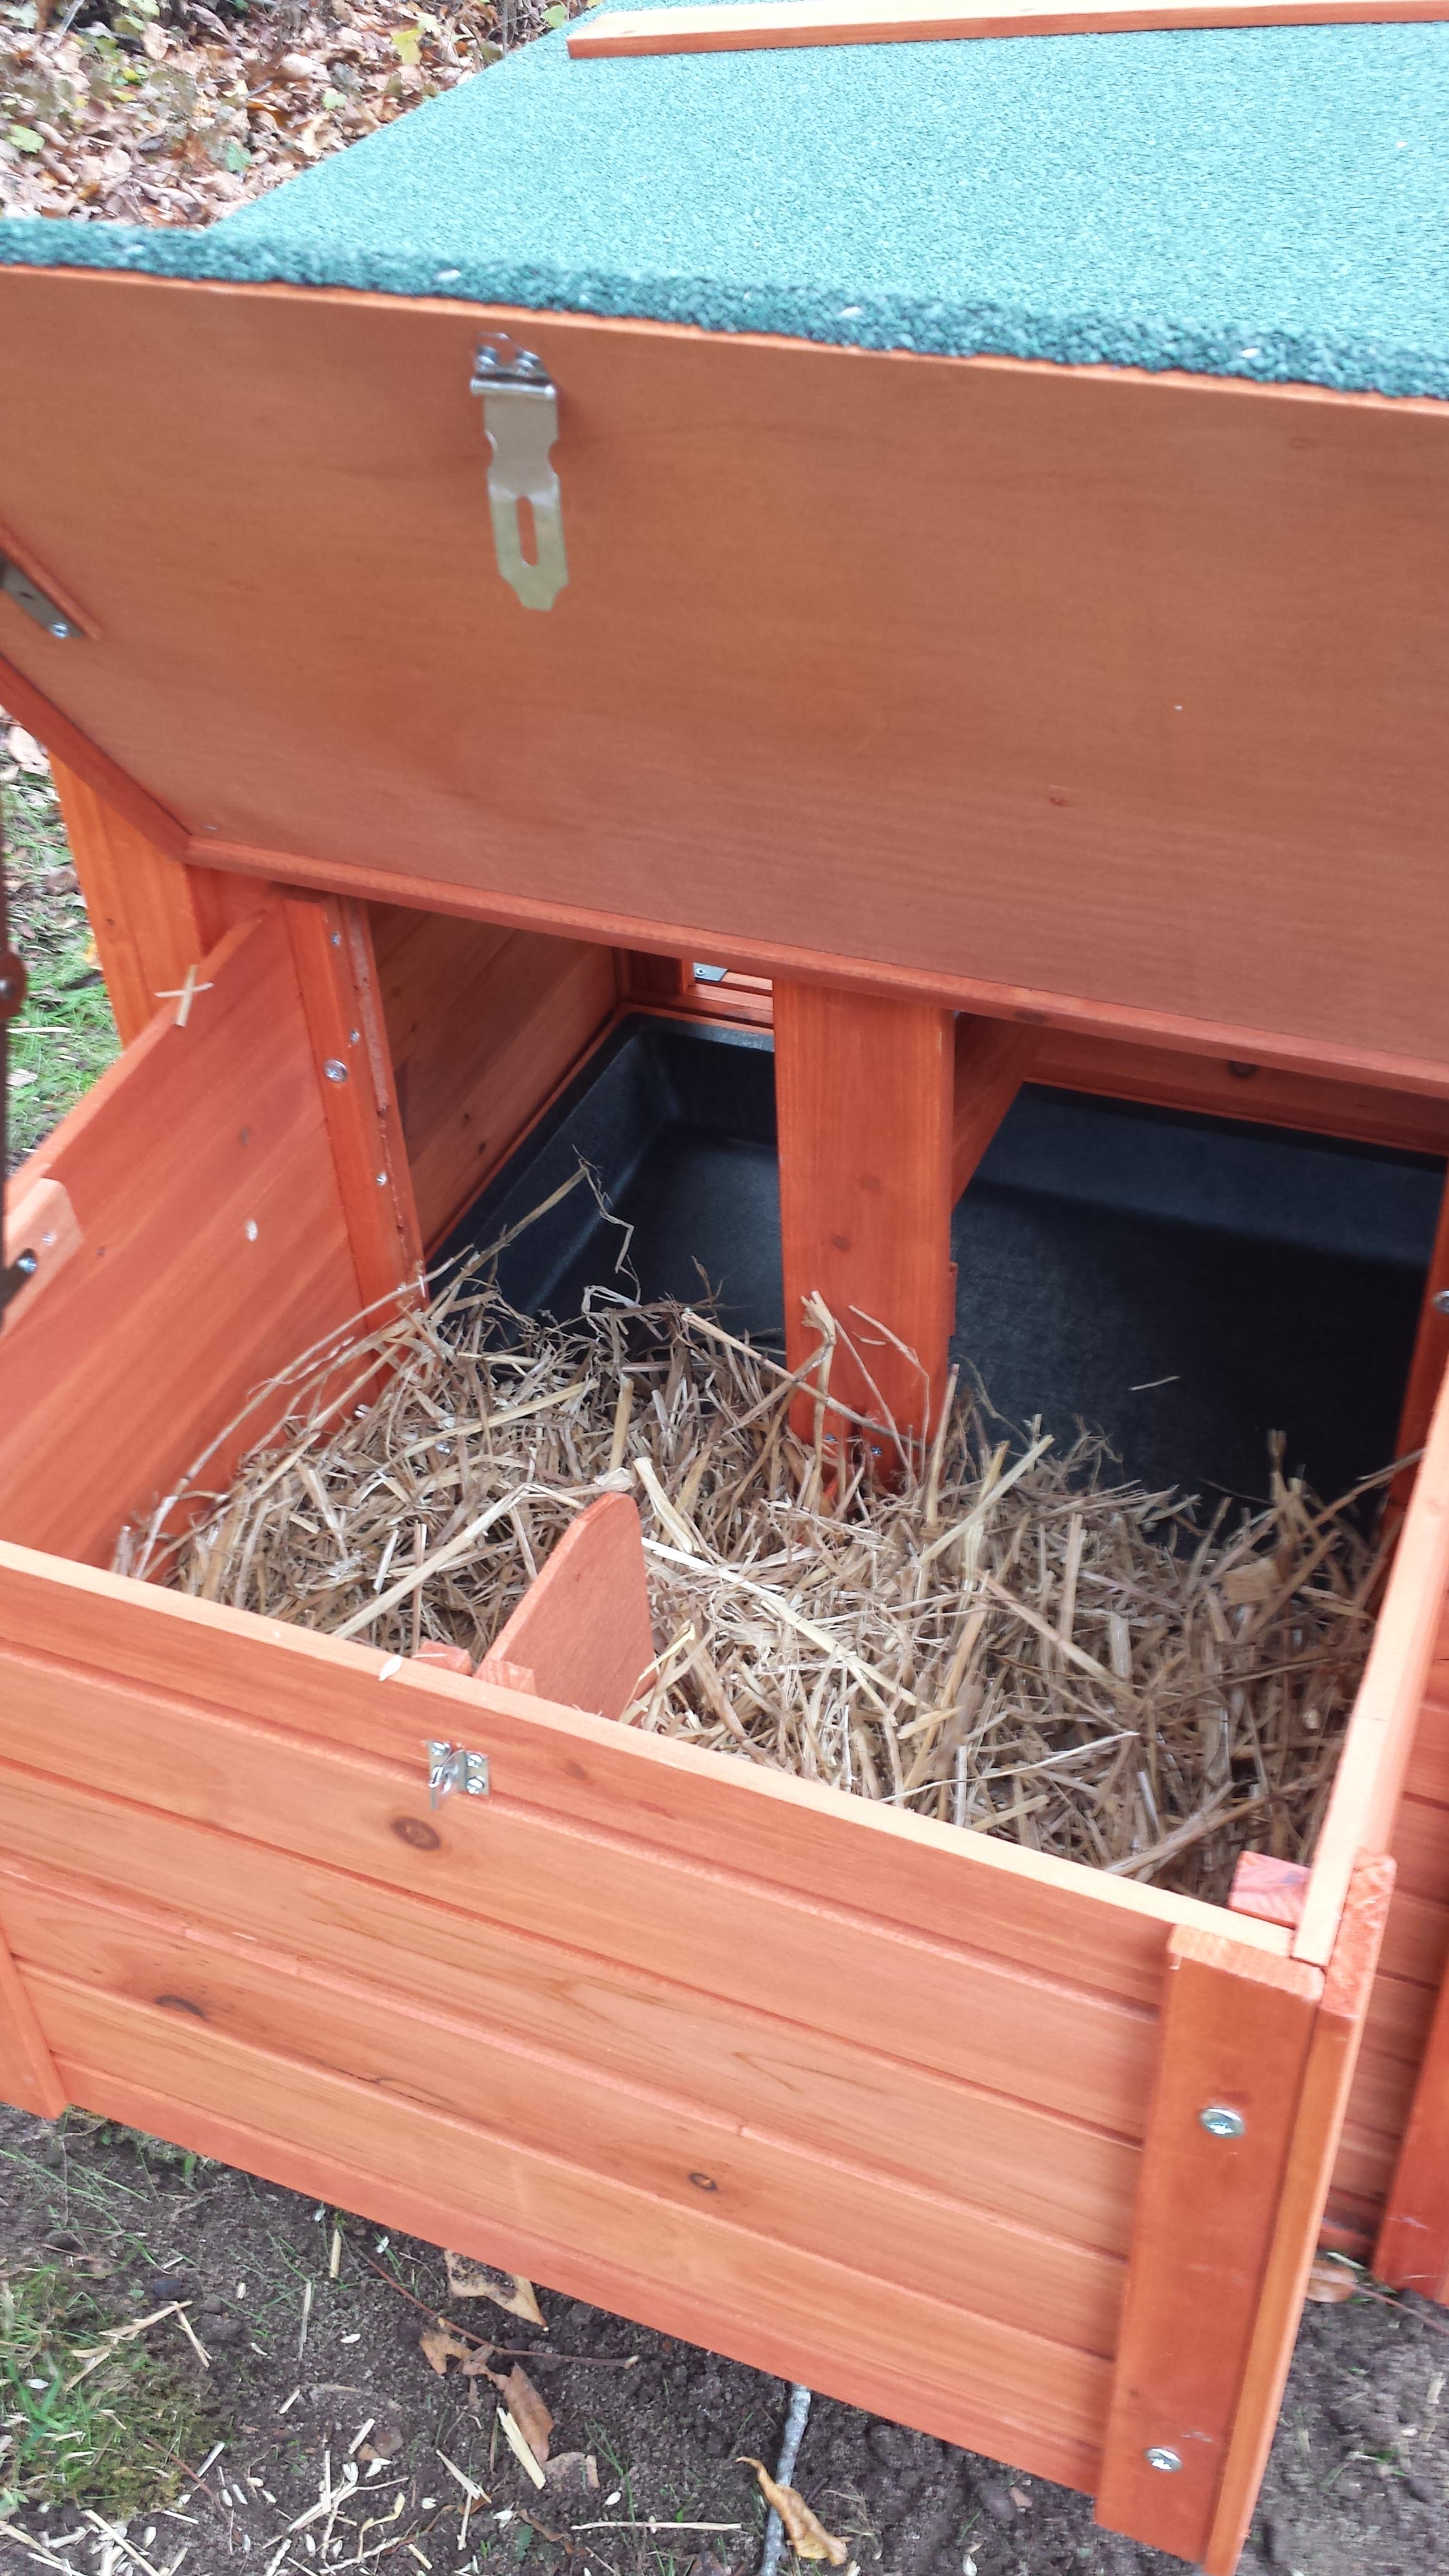 Inside the nest box...